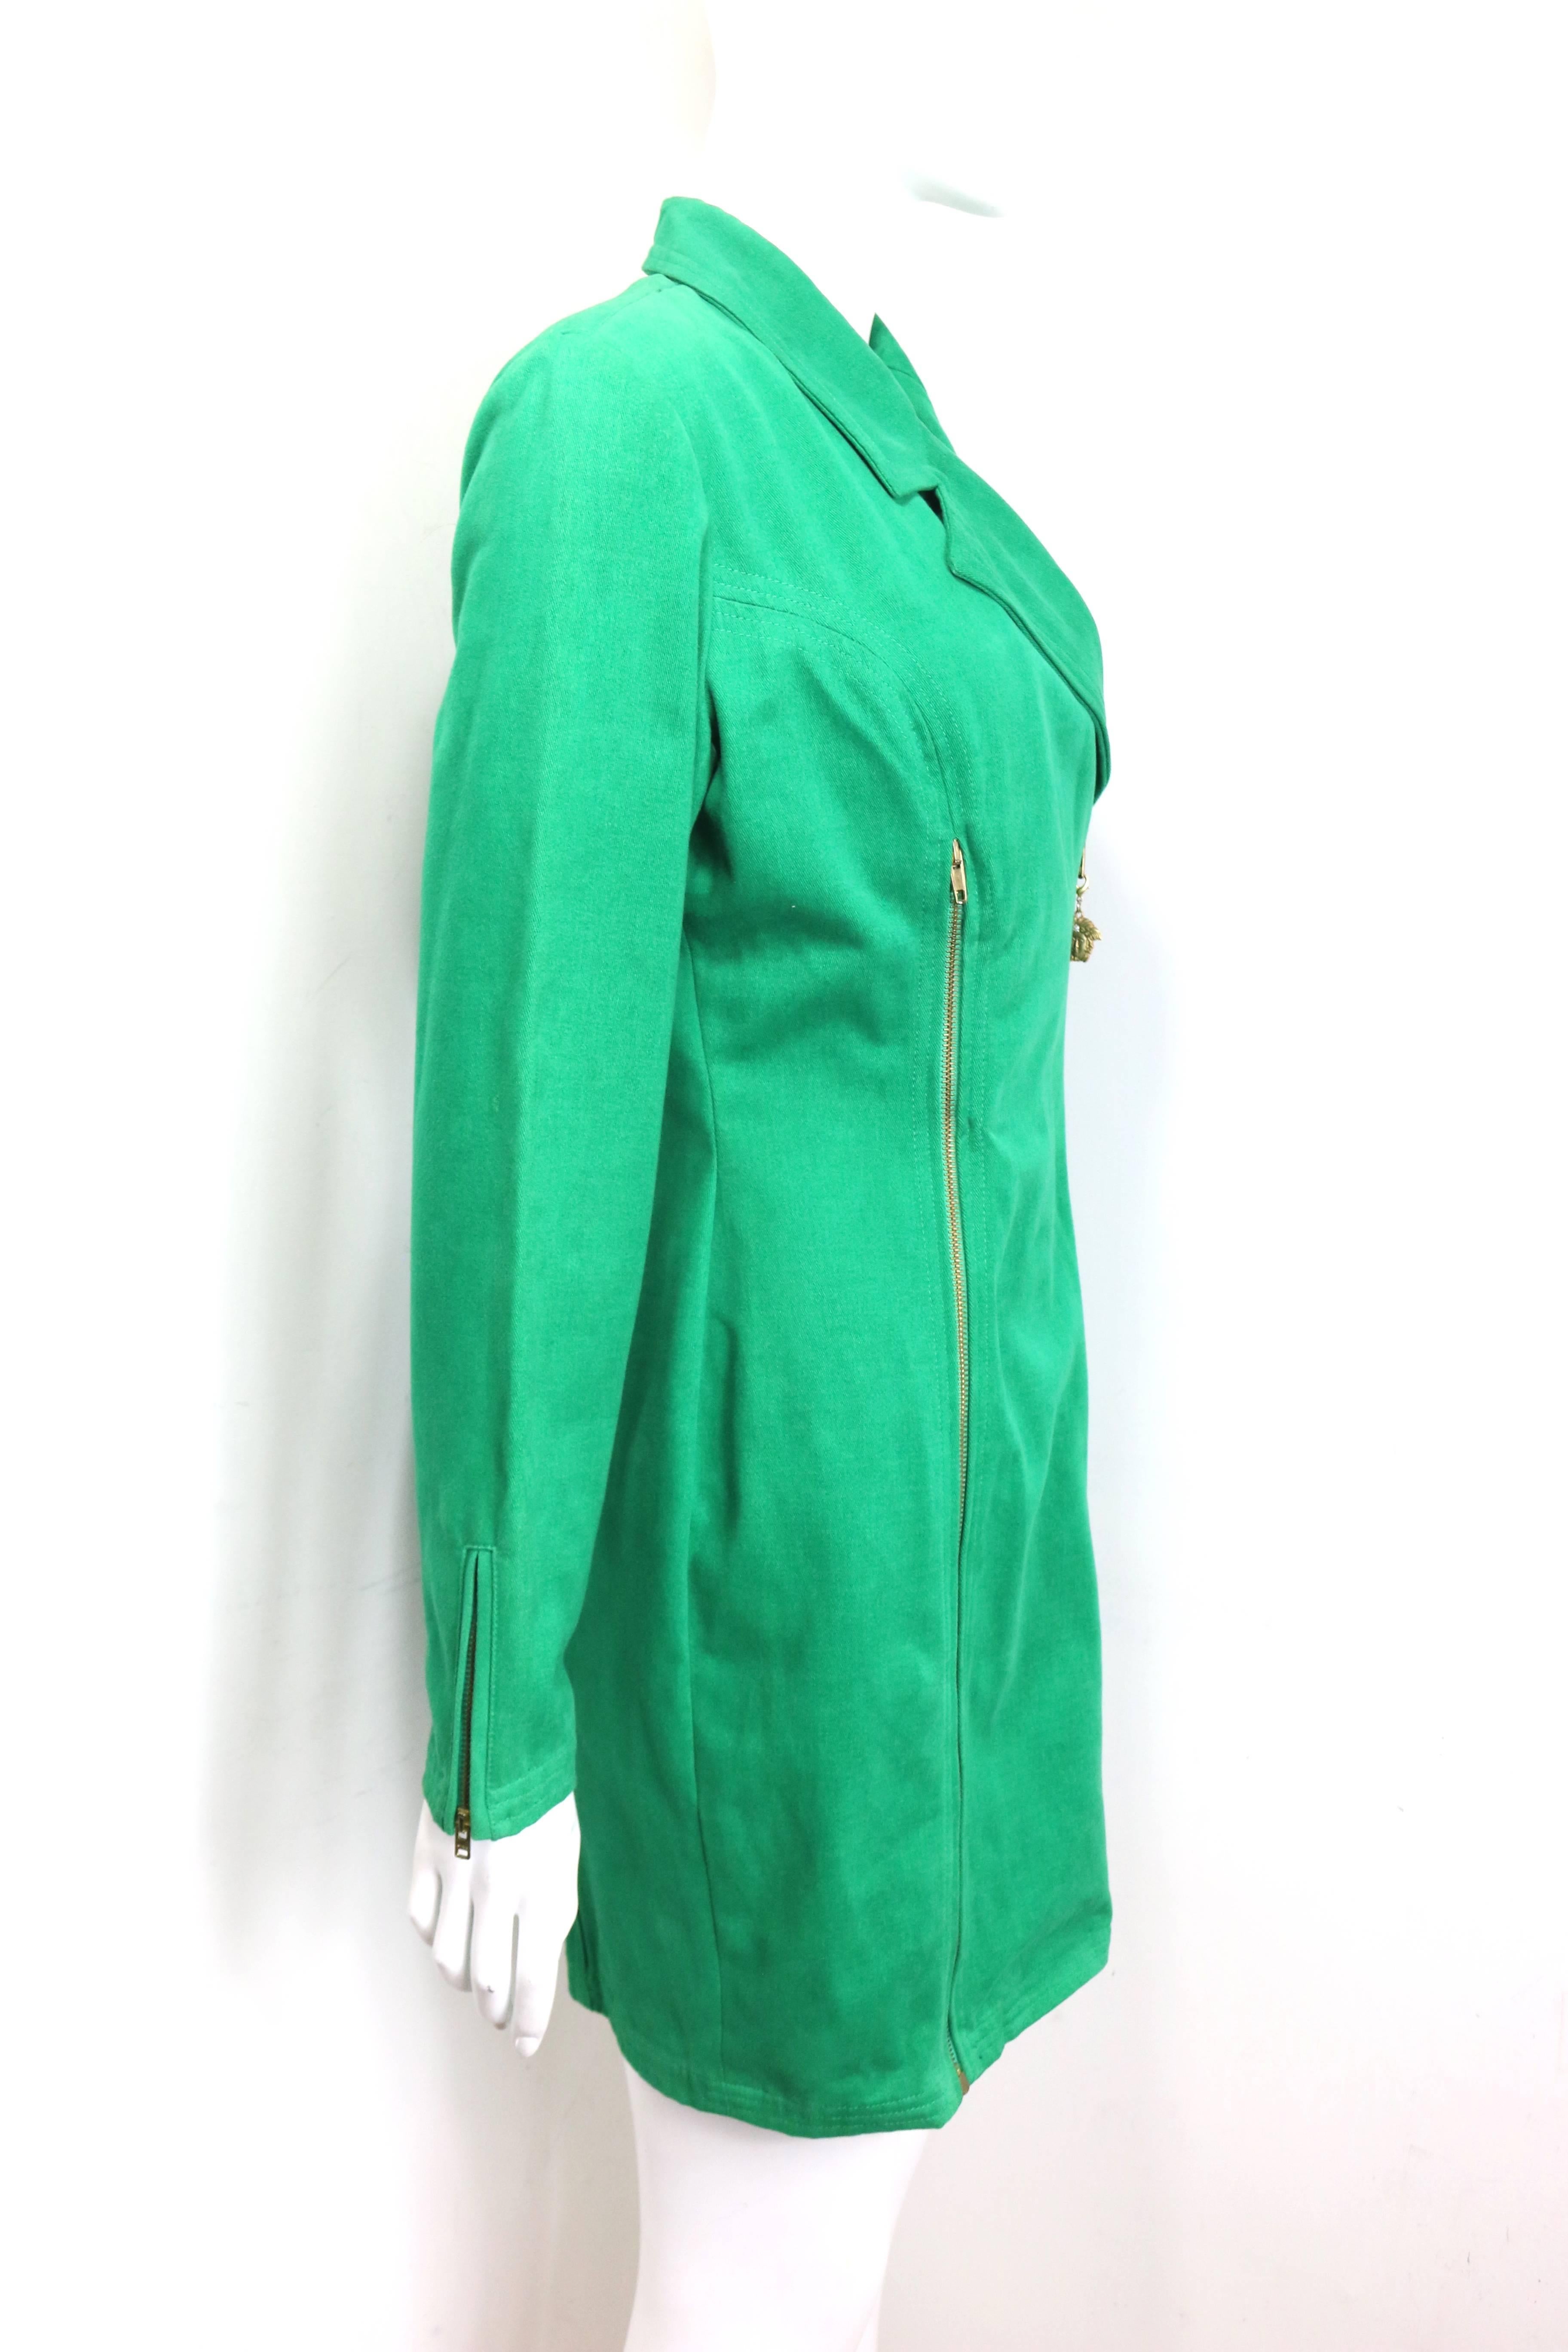 versace green jacket